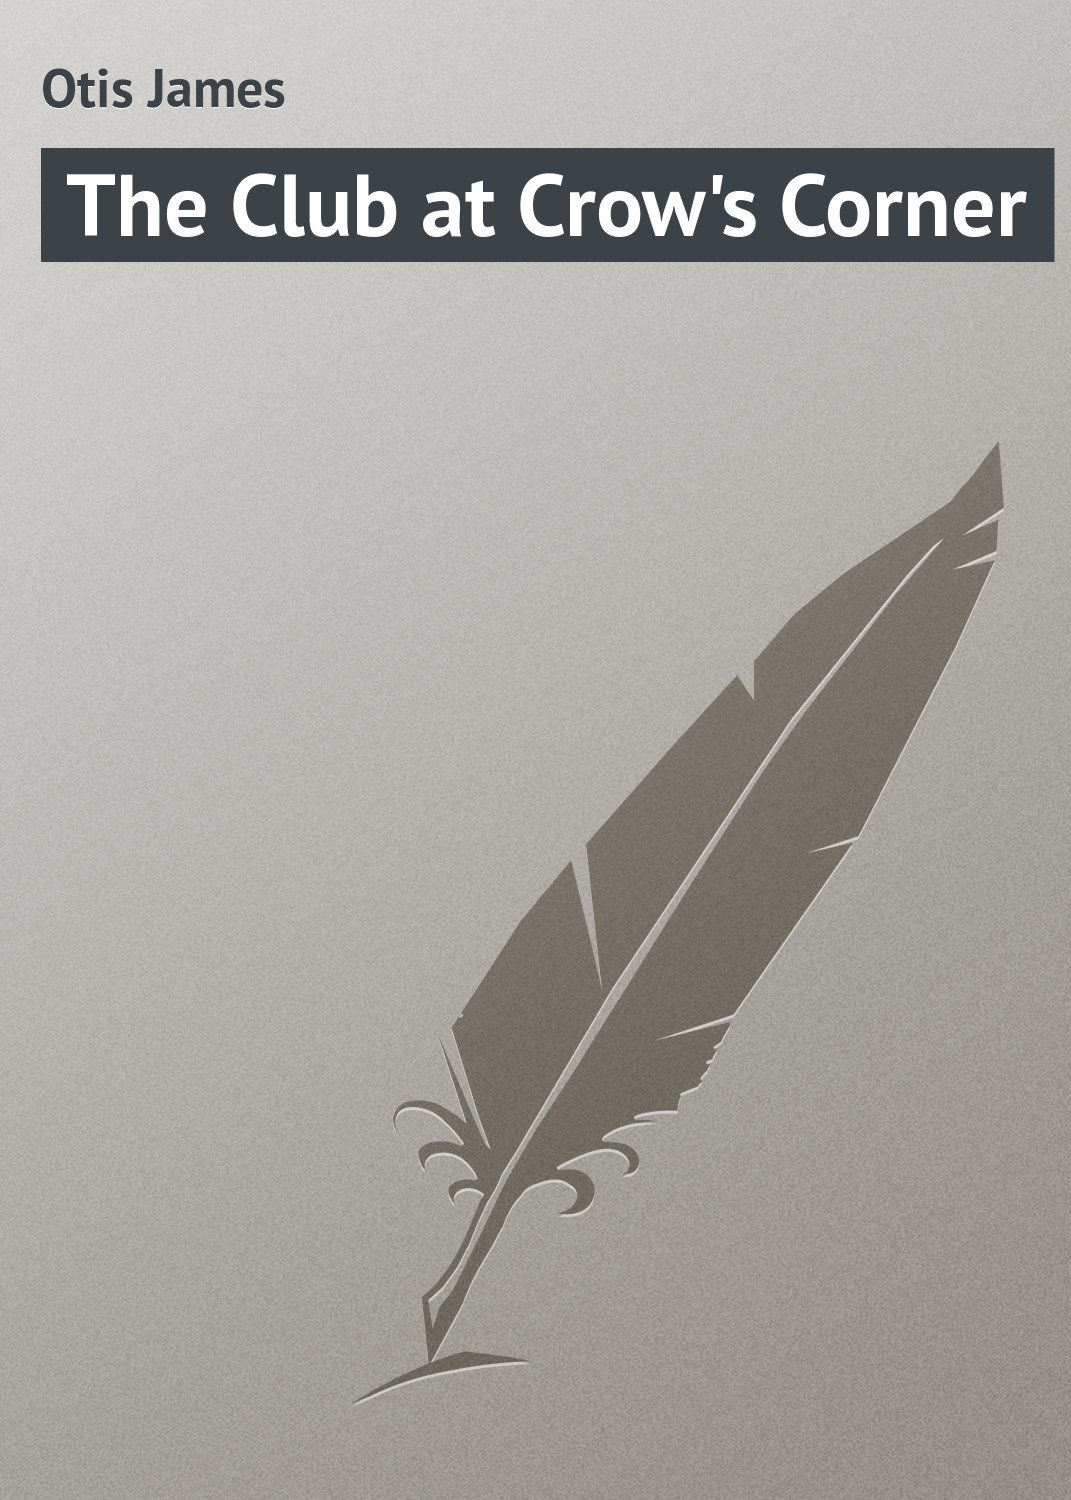 Книга The Club at Crow's Corner из серии , созданная James Otis, может относится к жанру Природа и животные, Зарубежная классика, Зарубежные детские книги. Стоимость книги The Club at Crow's Corner  с идентификатором 23168523 составляет 5.99 руб.